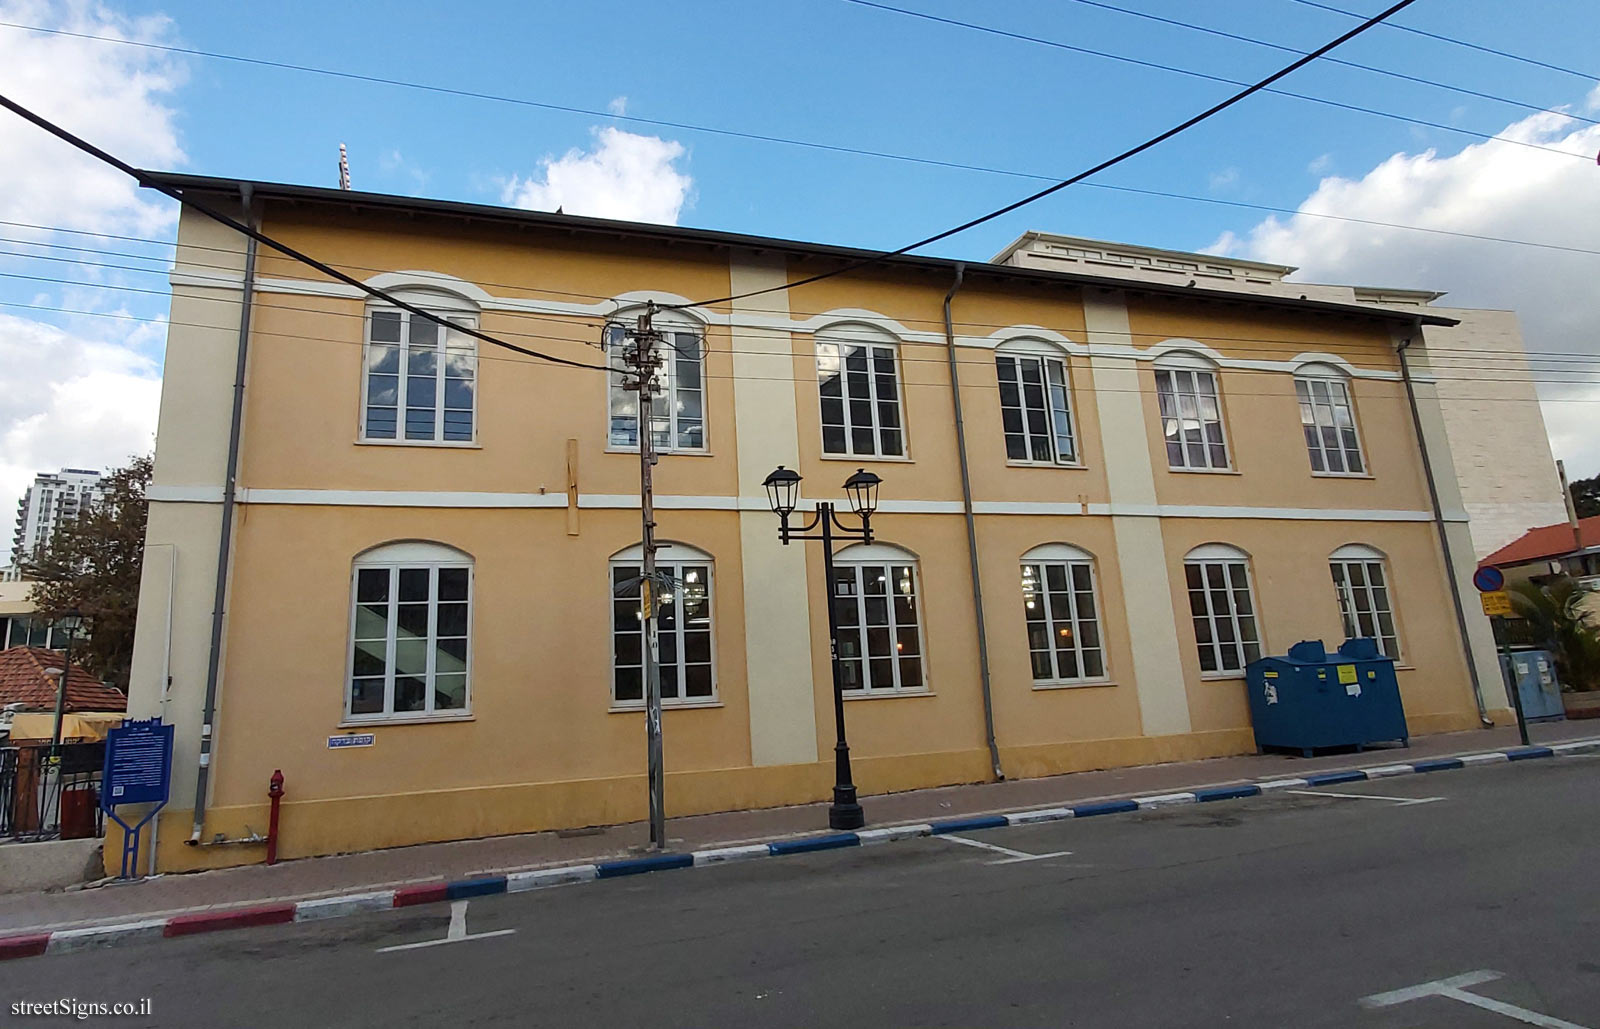 The Great Synagogue - Hovevei Tsiyon St 35, Petah Tikva, Israel